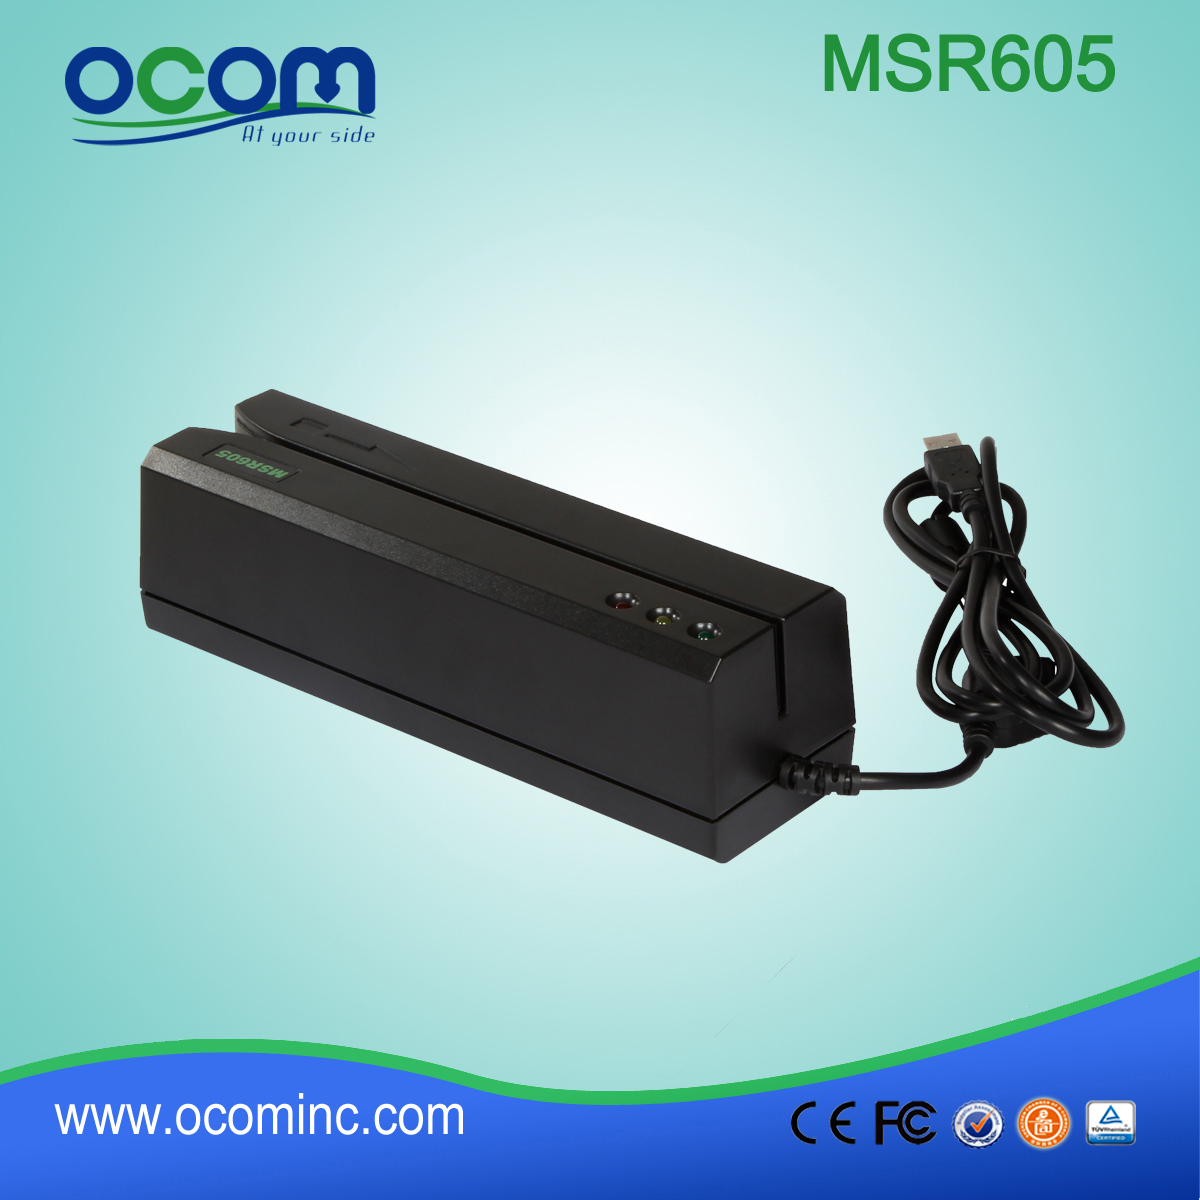 قدم (MSR605) الصين القارئ مصغرة بطاقة وRS232 writter، وقارئ بطاقة وwritter USB